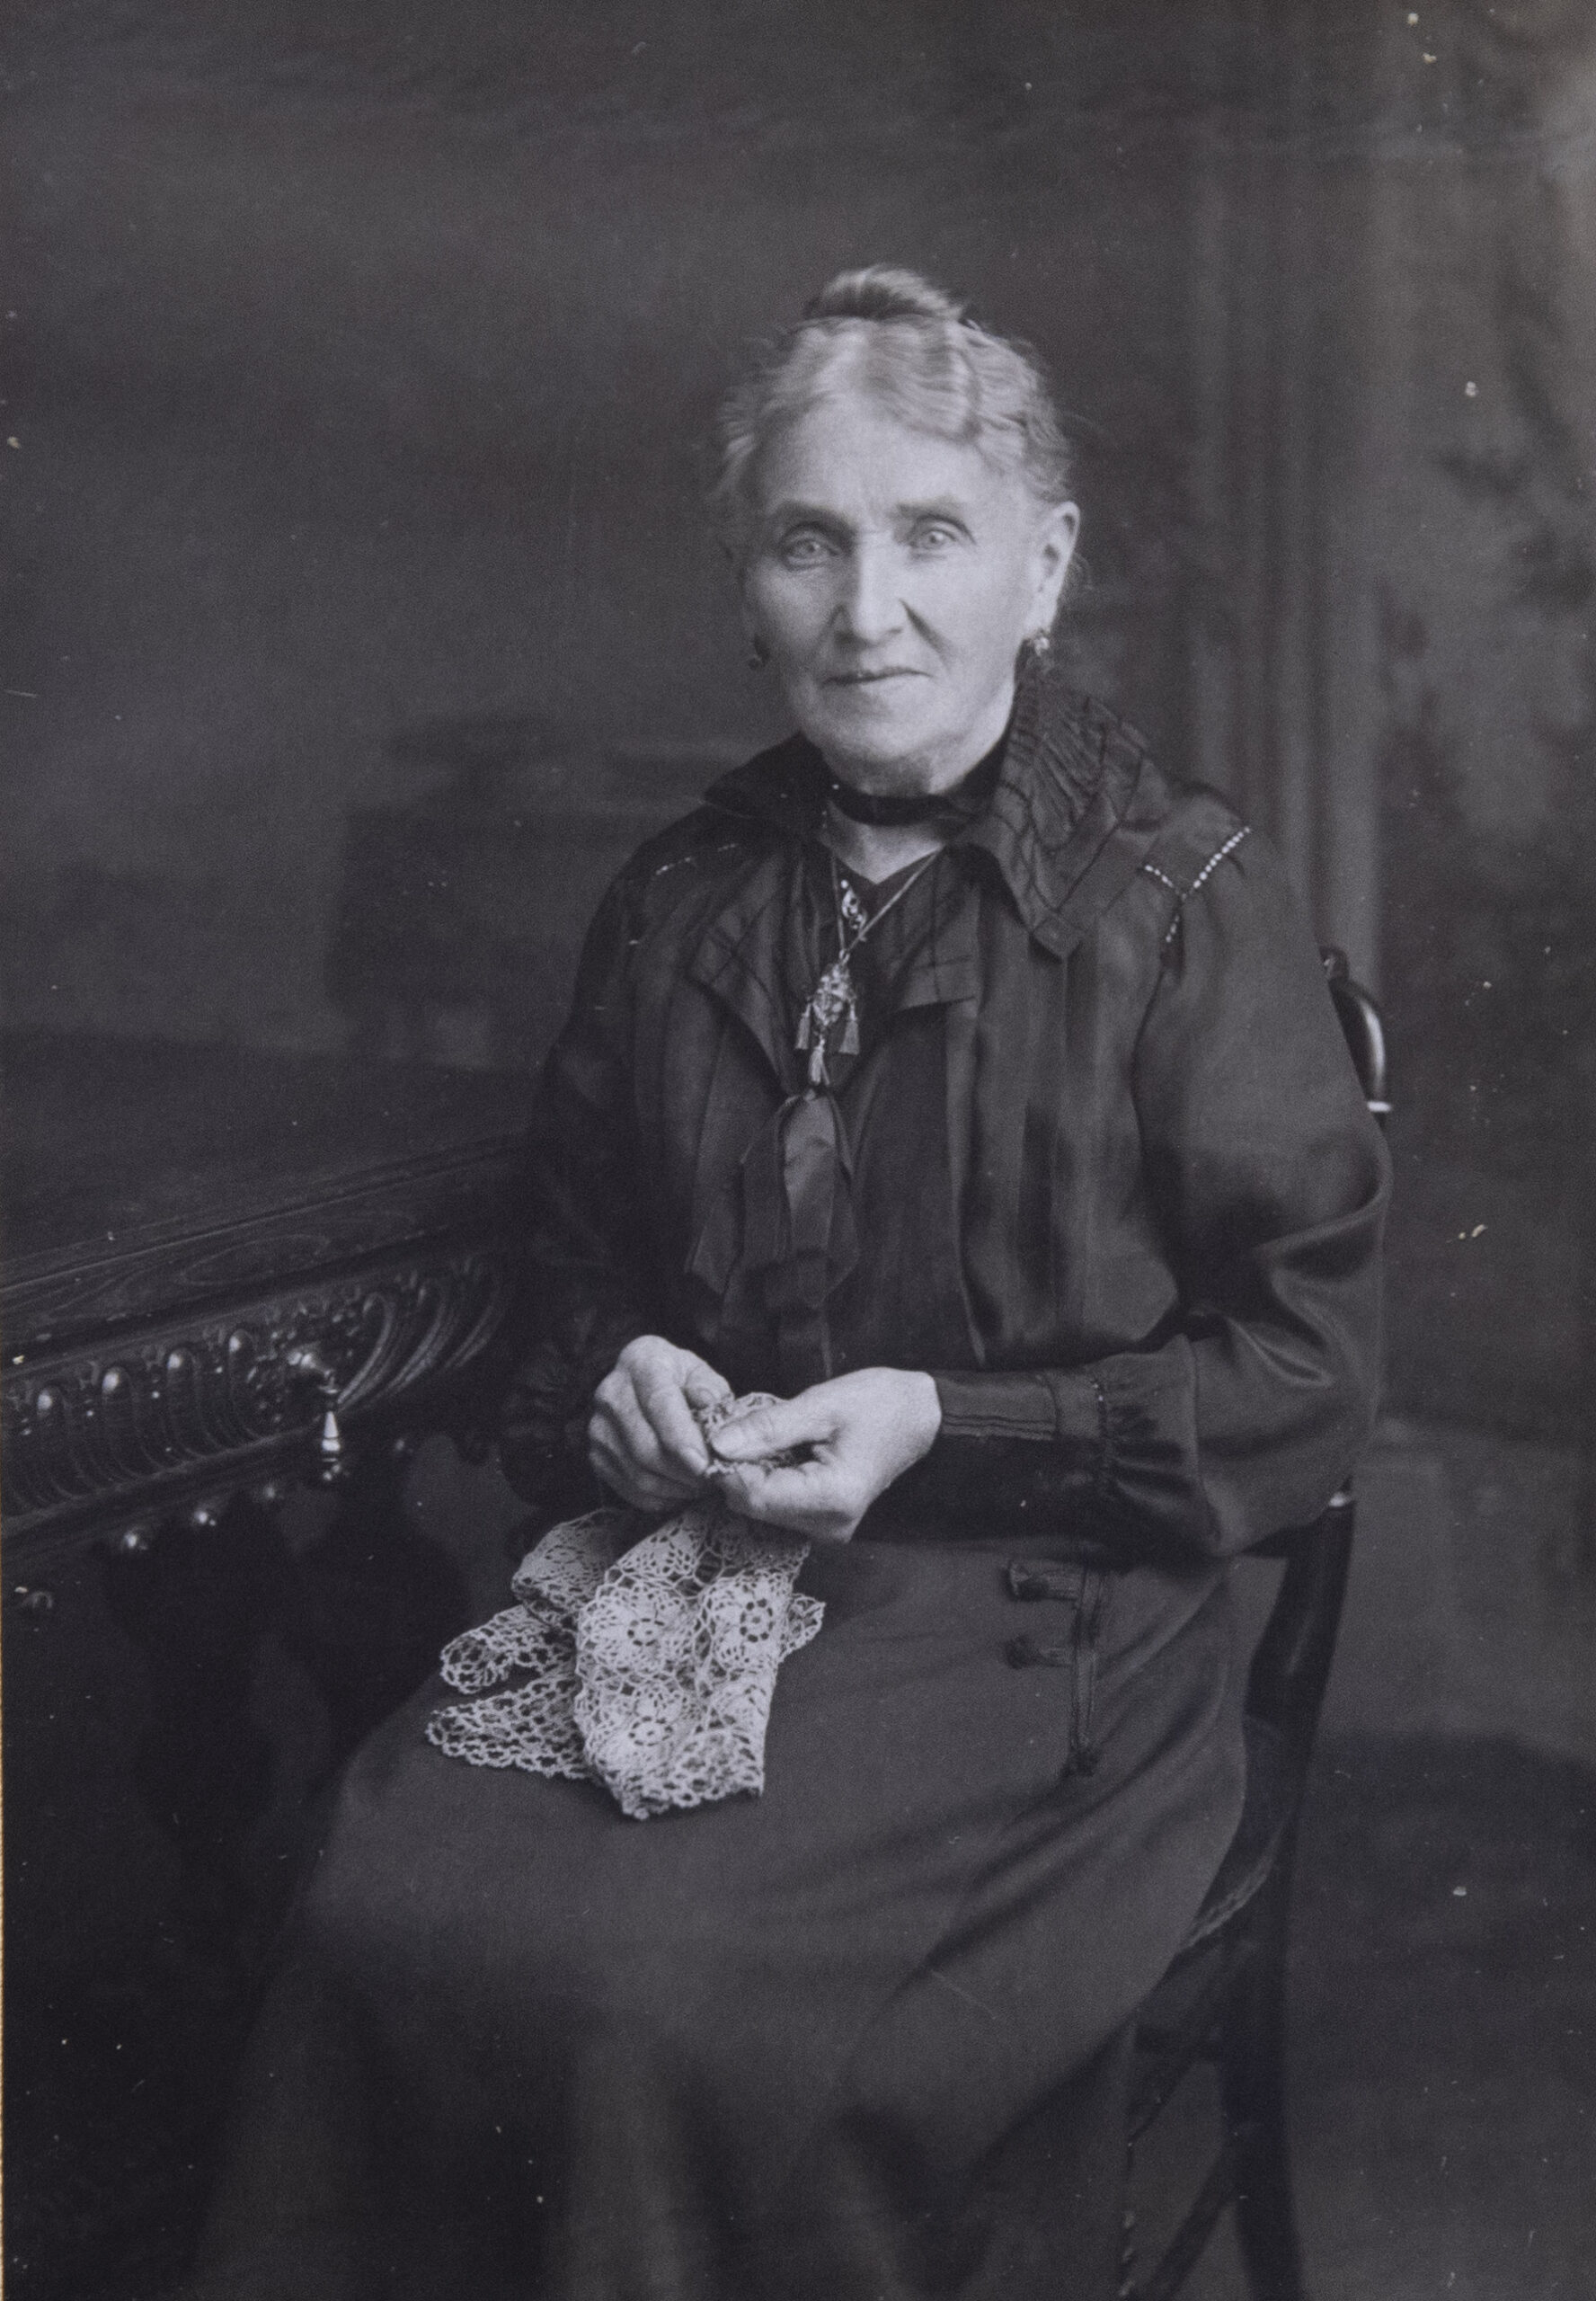 Madame Emile Dardenne, née Joséphine Warzée en 1846, doyenne des marraines d’Andenne. Elle avait 72 ans en 1918. On la retrouve sur la photographie suivante, assise à table, à gauche, un même ouvrage de couture entre les mains.